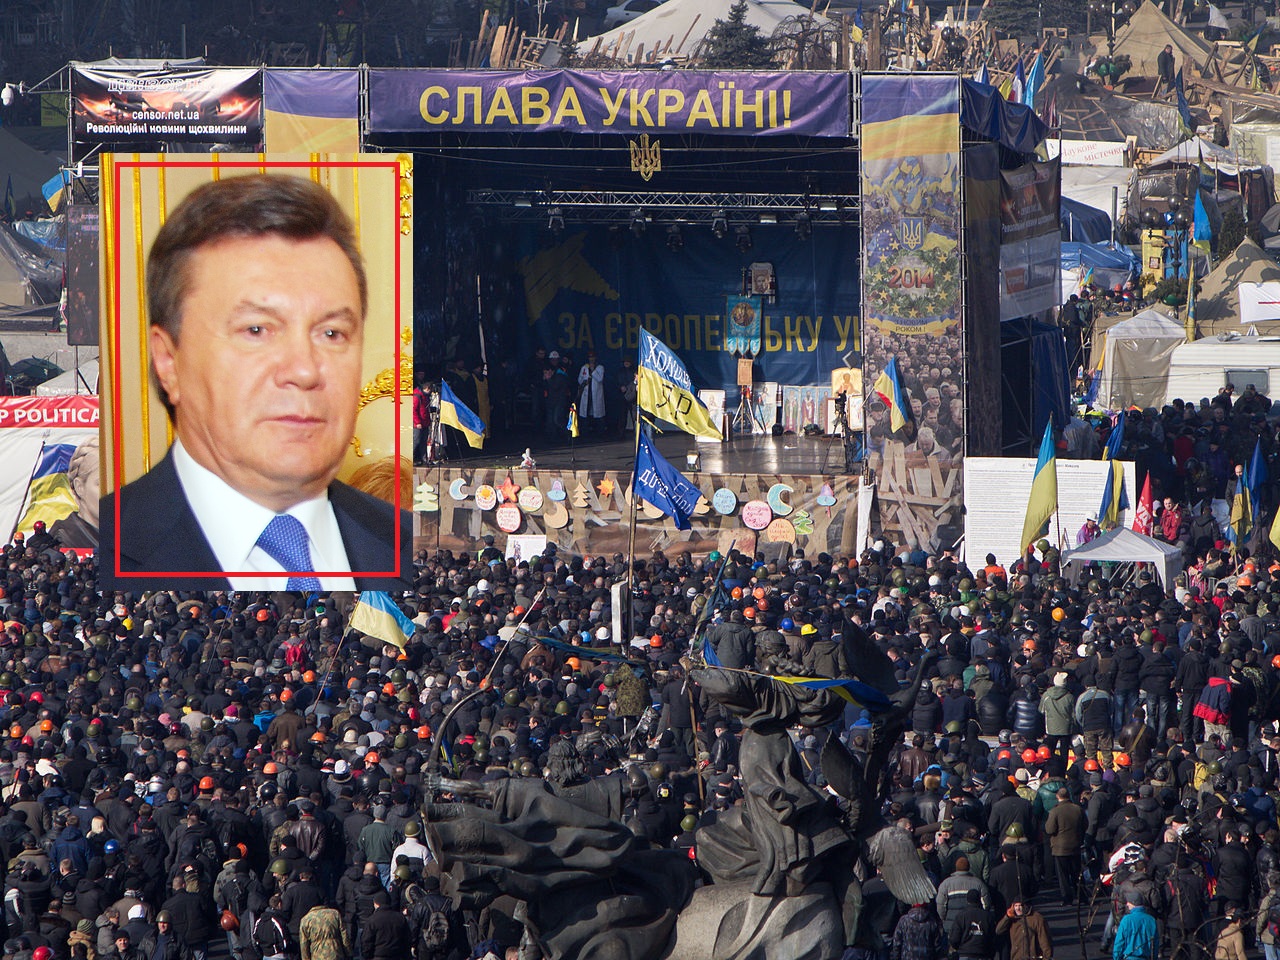 4 آرزو یا هدف پوتین از جنگ: از حذف کامل اوکراین تا خودمختاری کامل دو جمهوری